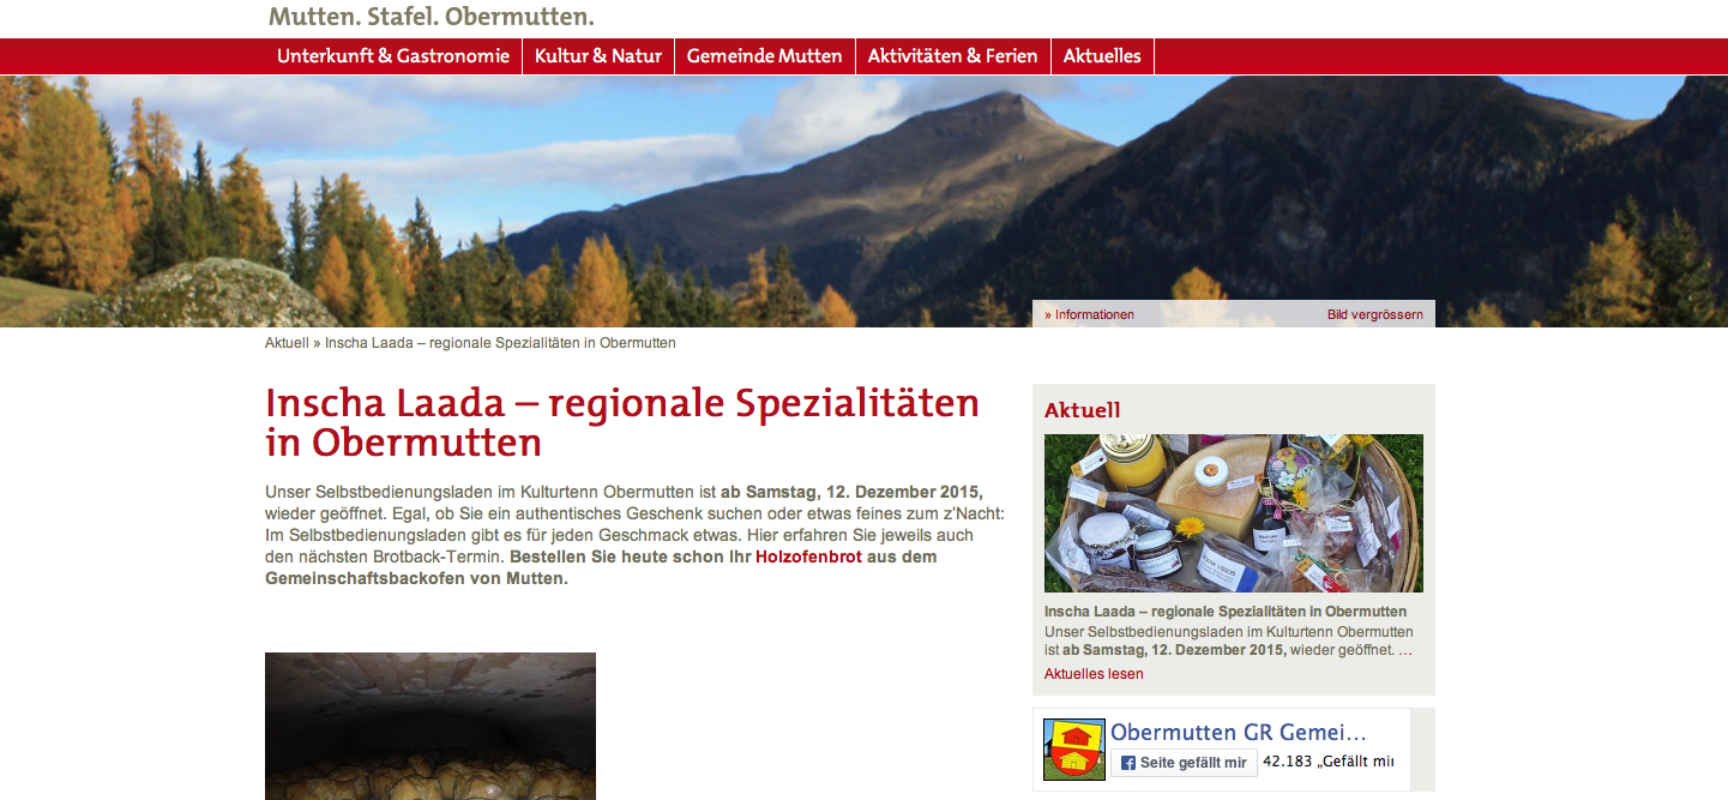 Sils: Wasseruntersuchungsbericht über den Kanton Graubünden